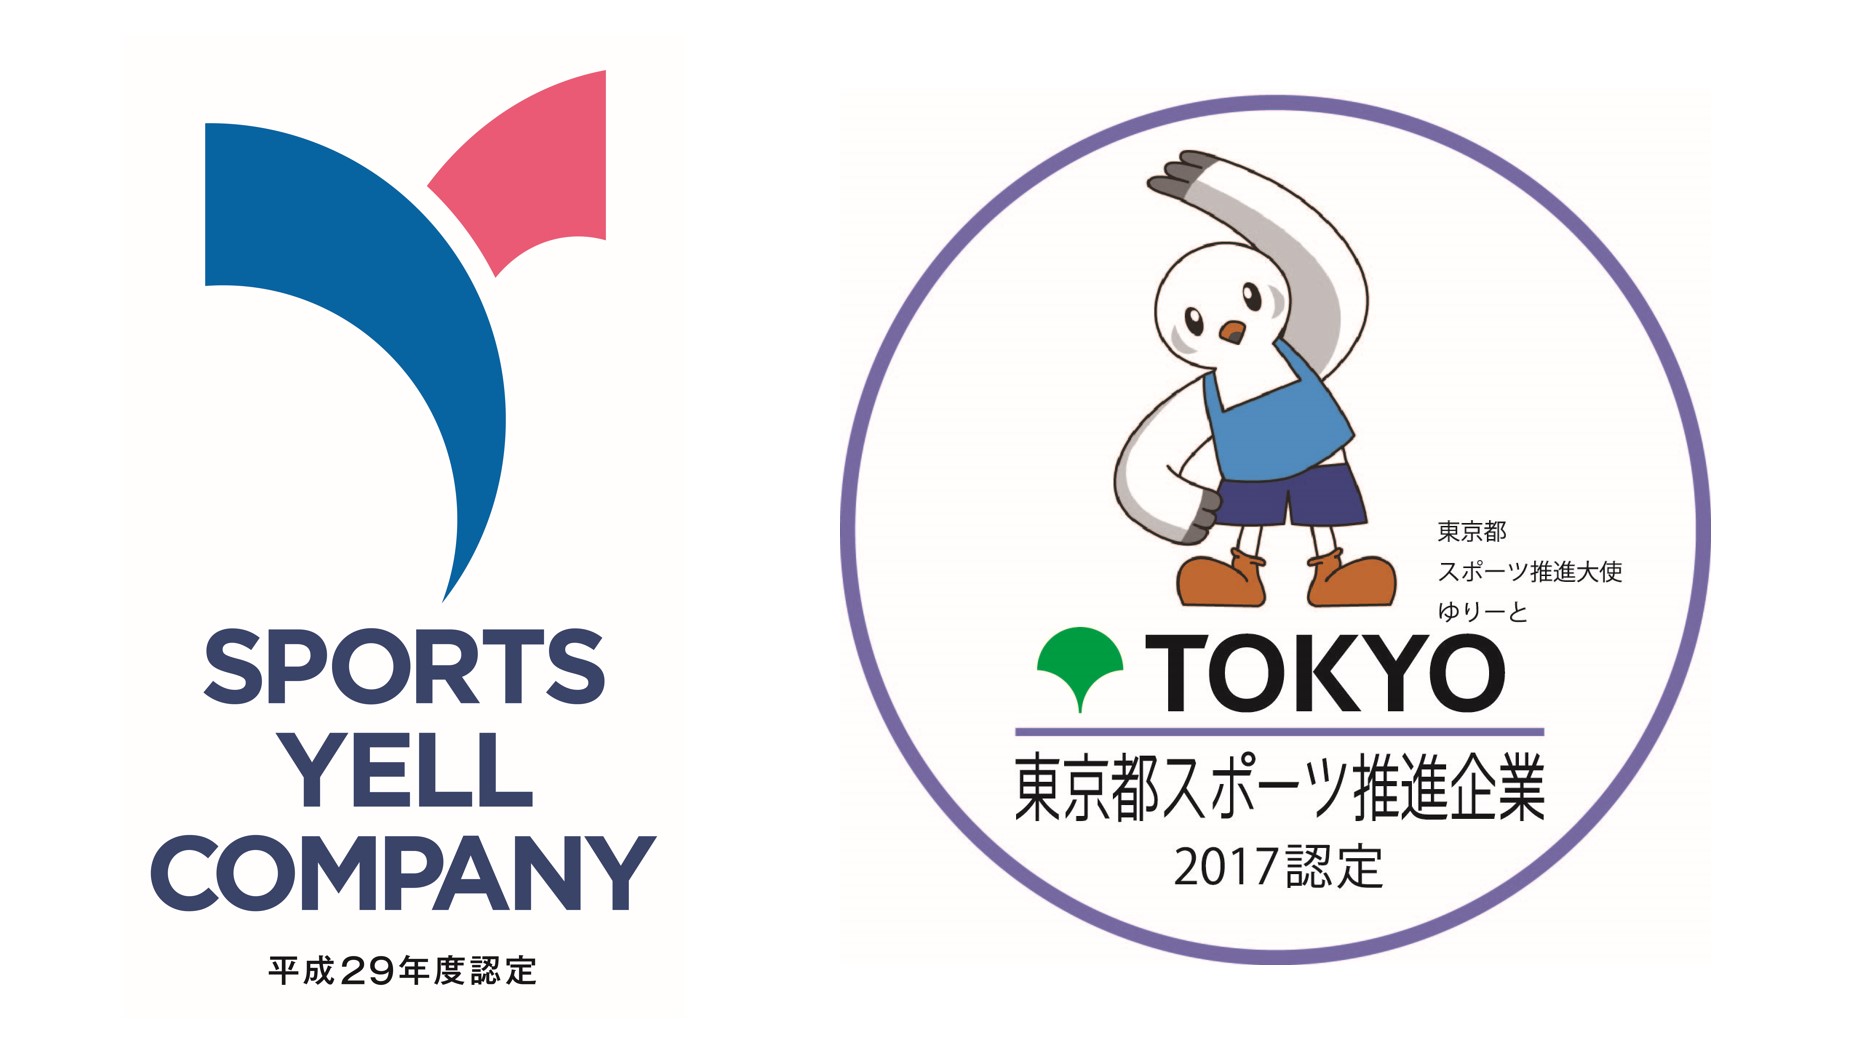 「スポーツエールカンパニー」「東京都スポーツ推進企業」に認定されました